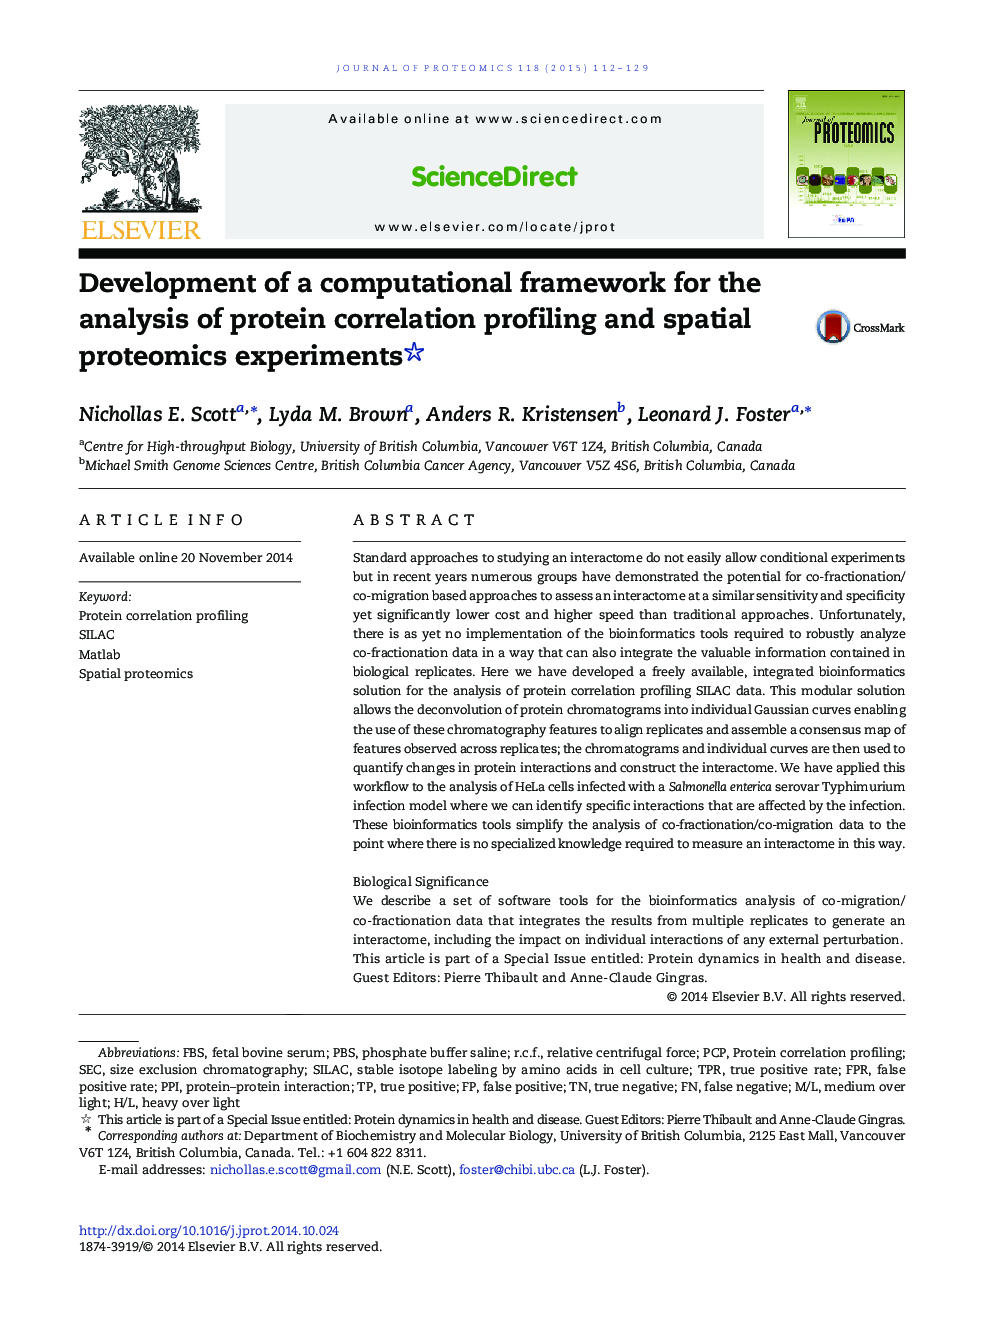 توسعه یک چارچوب محاسباتی برای تجزیه و تحلیل پروفیل همبستگی پروتئین و آزمایشات پروتئومیکای فضایی 